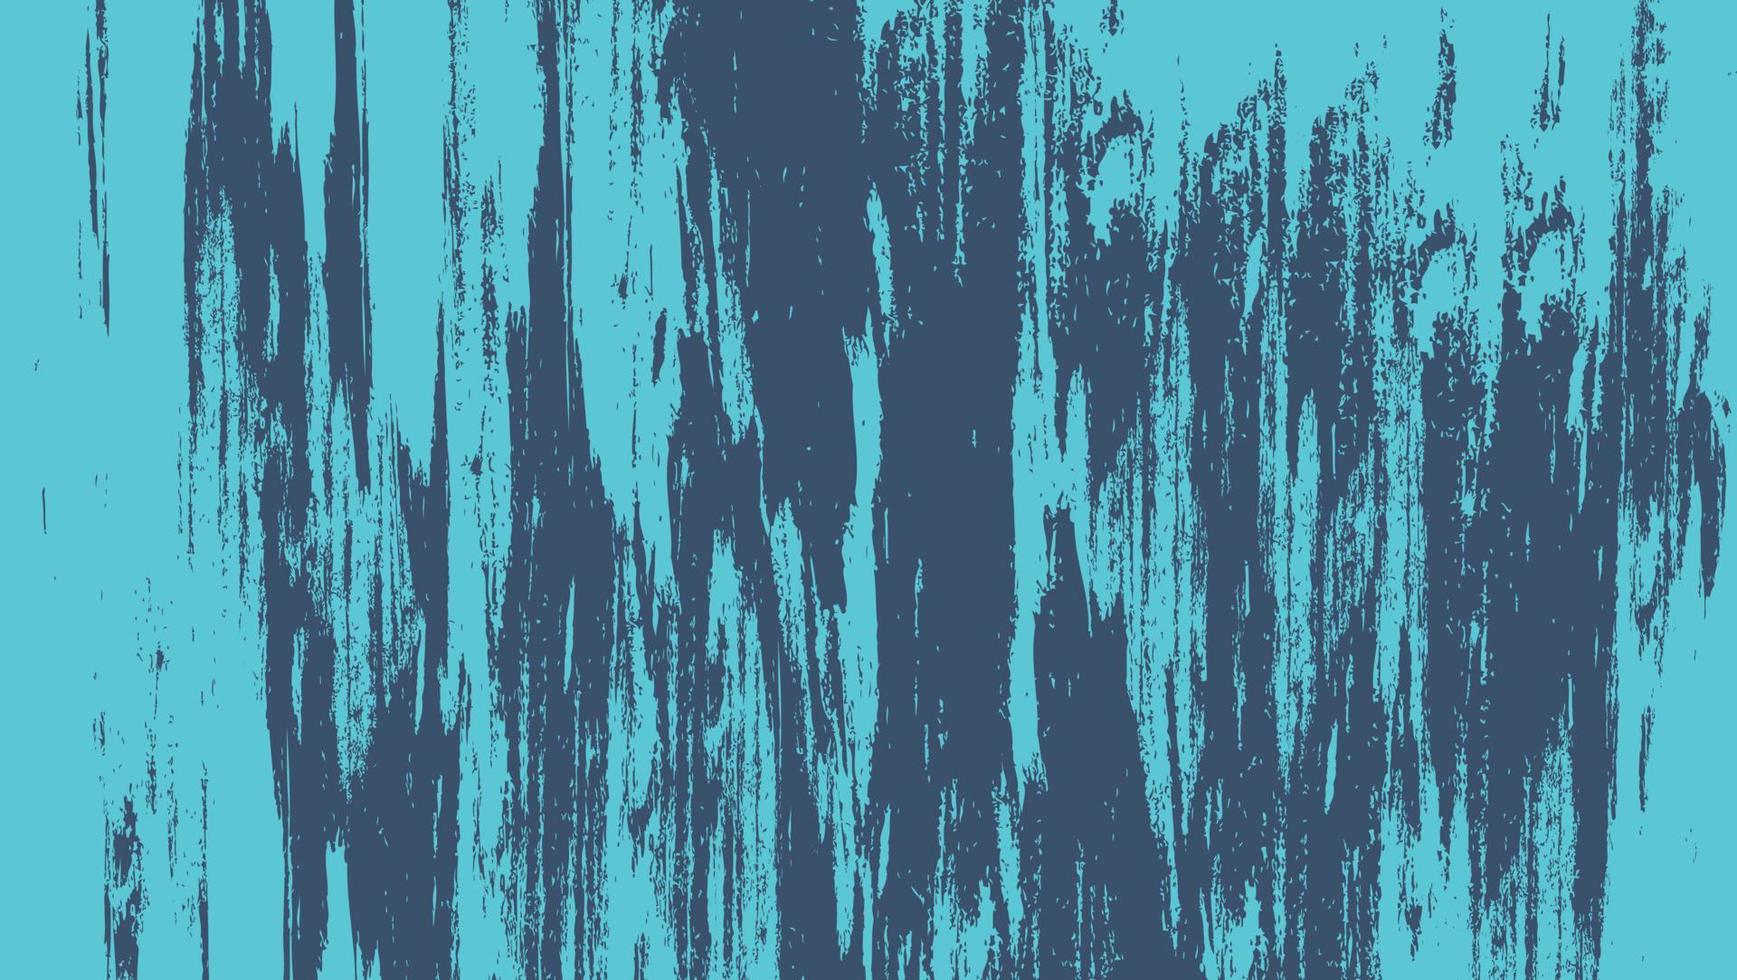 Abstract Rough Blue Grunge Texture Design In Dark Background vector